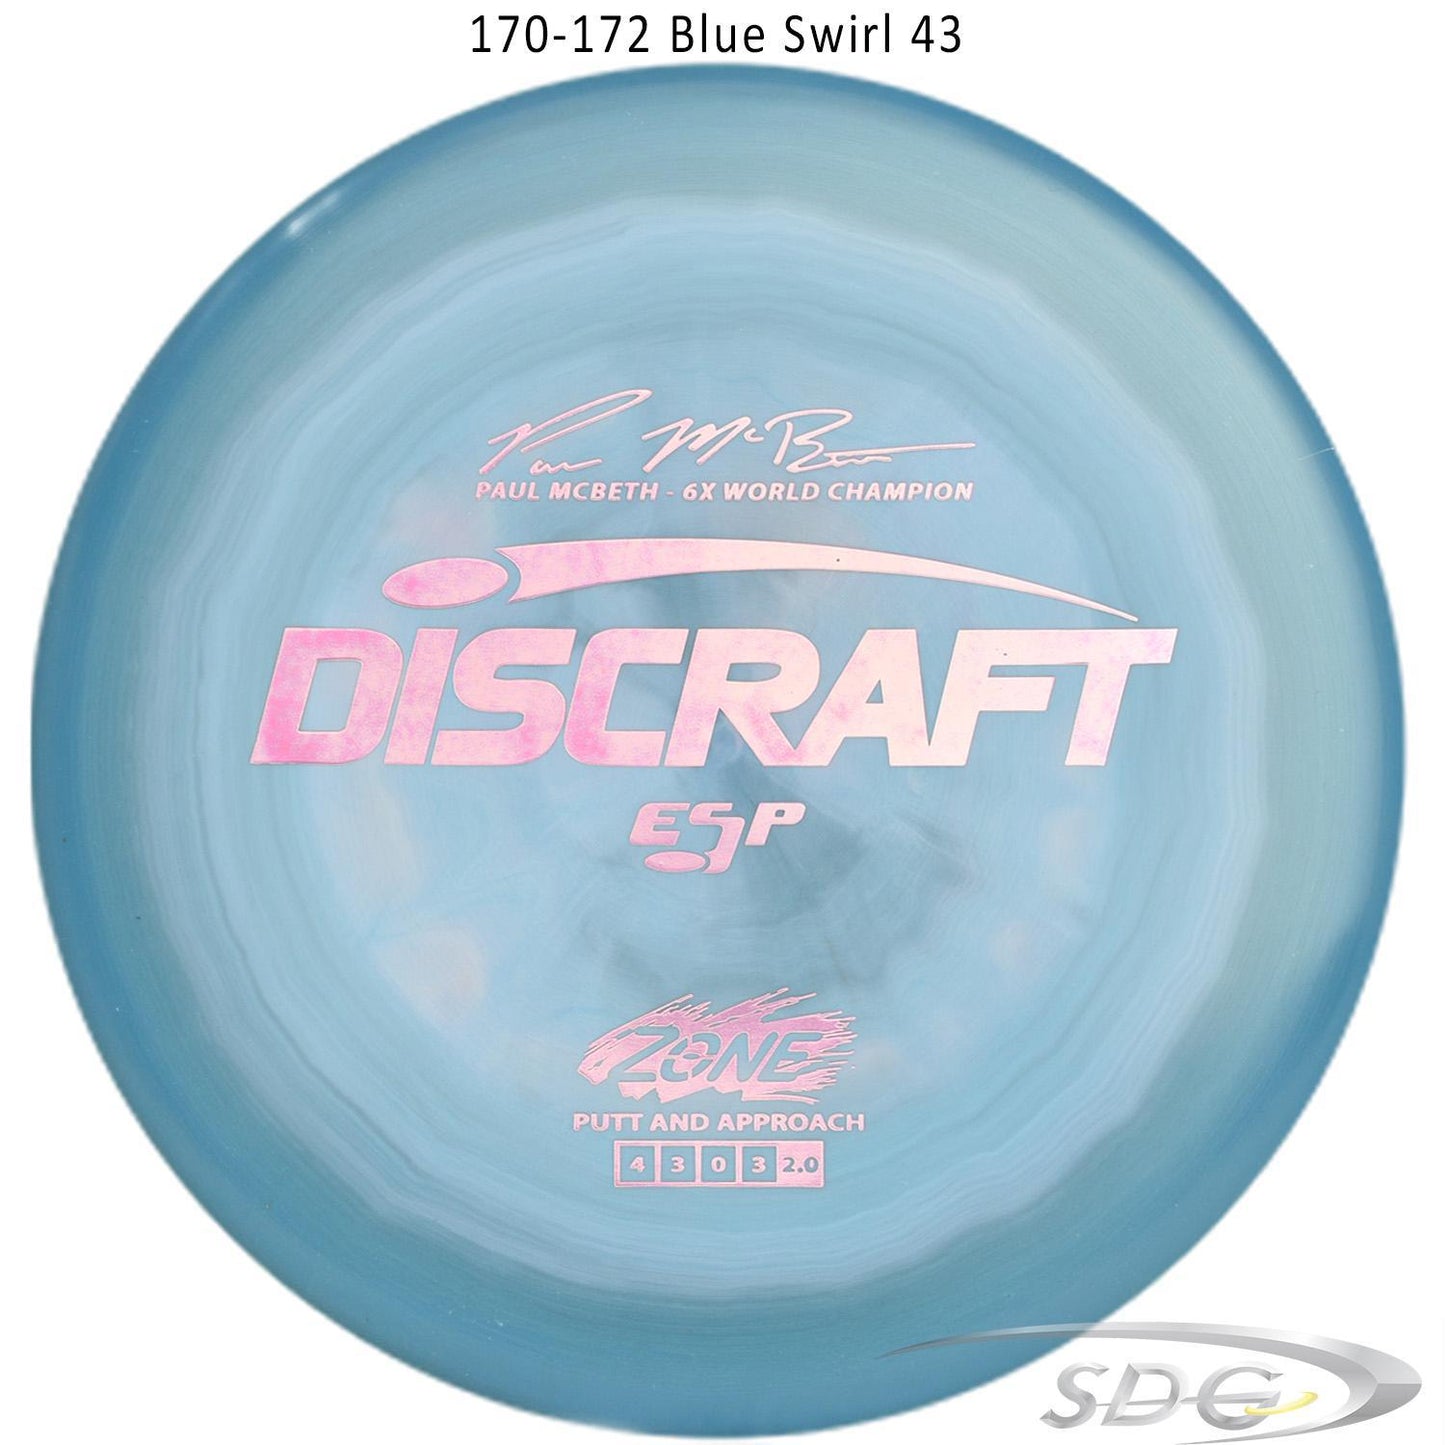 discraft-esp-zone-6x-paul-mcbeth-signature-series-disc-golf-putter-172-170-weights 170-172 Blue Swirl 43 